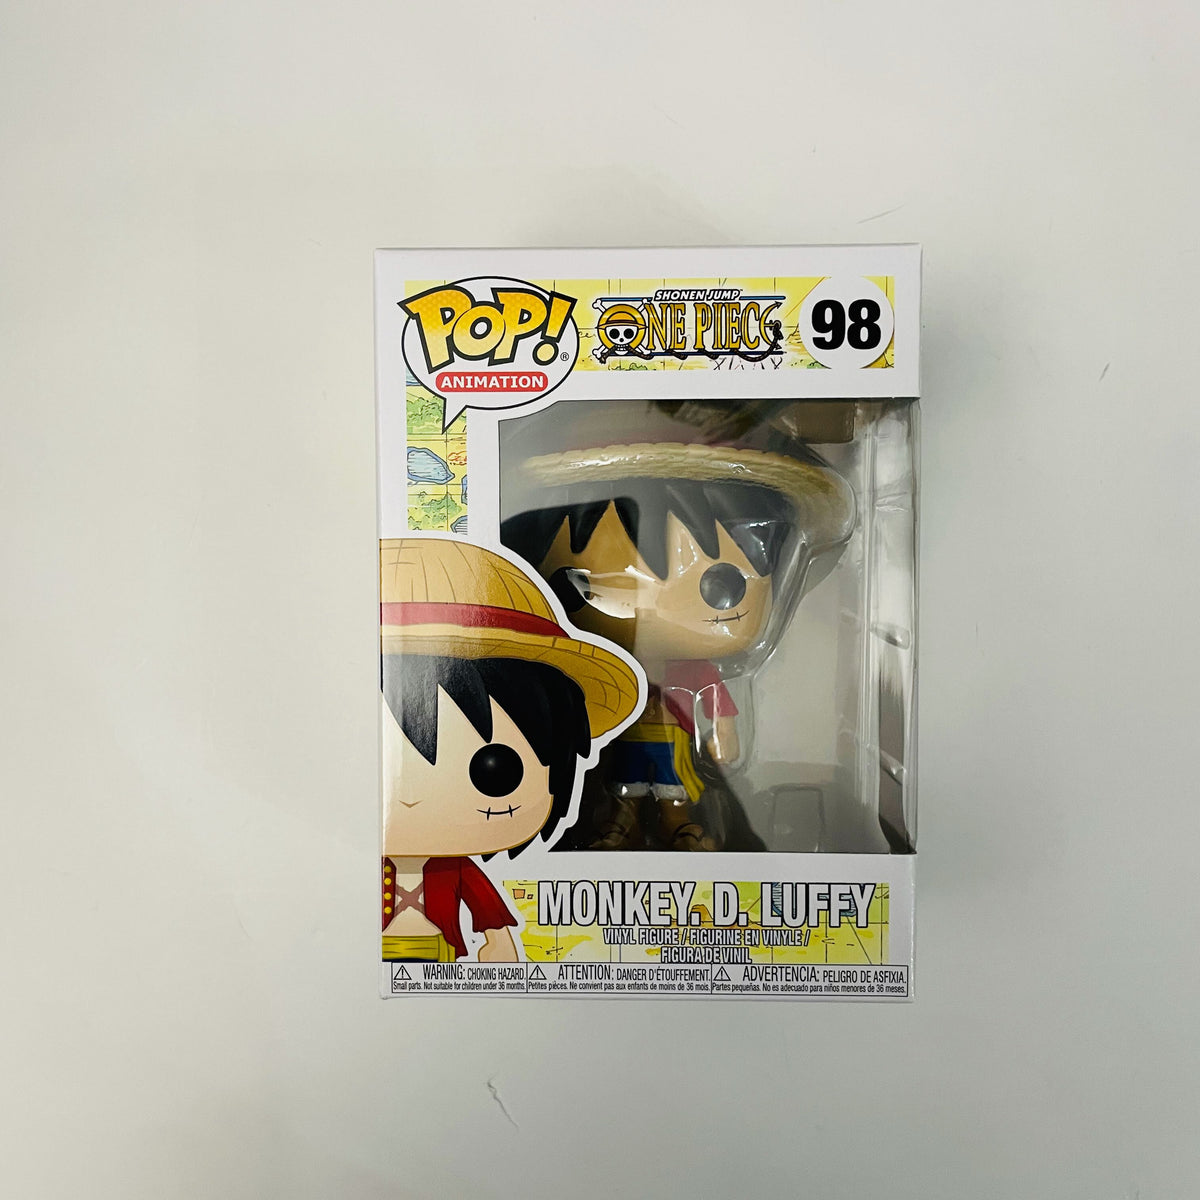 Figura Pop! One Piece - Monkey D. Luffy